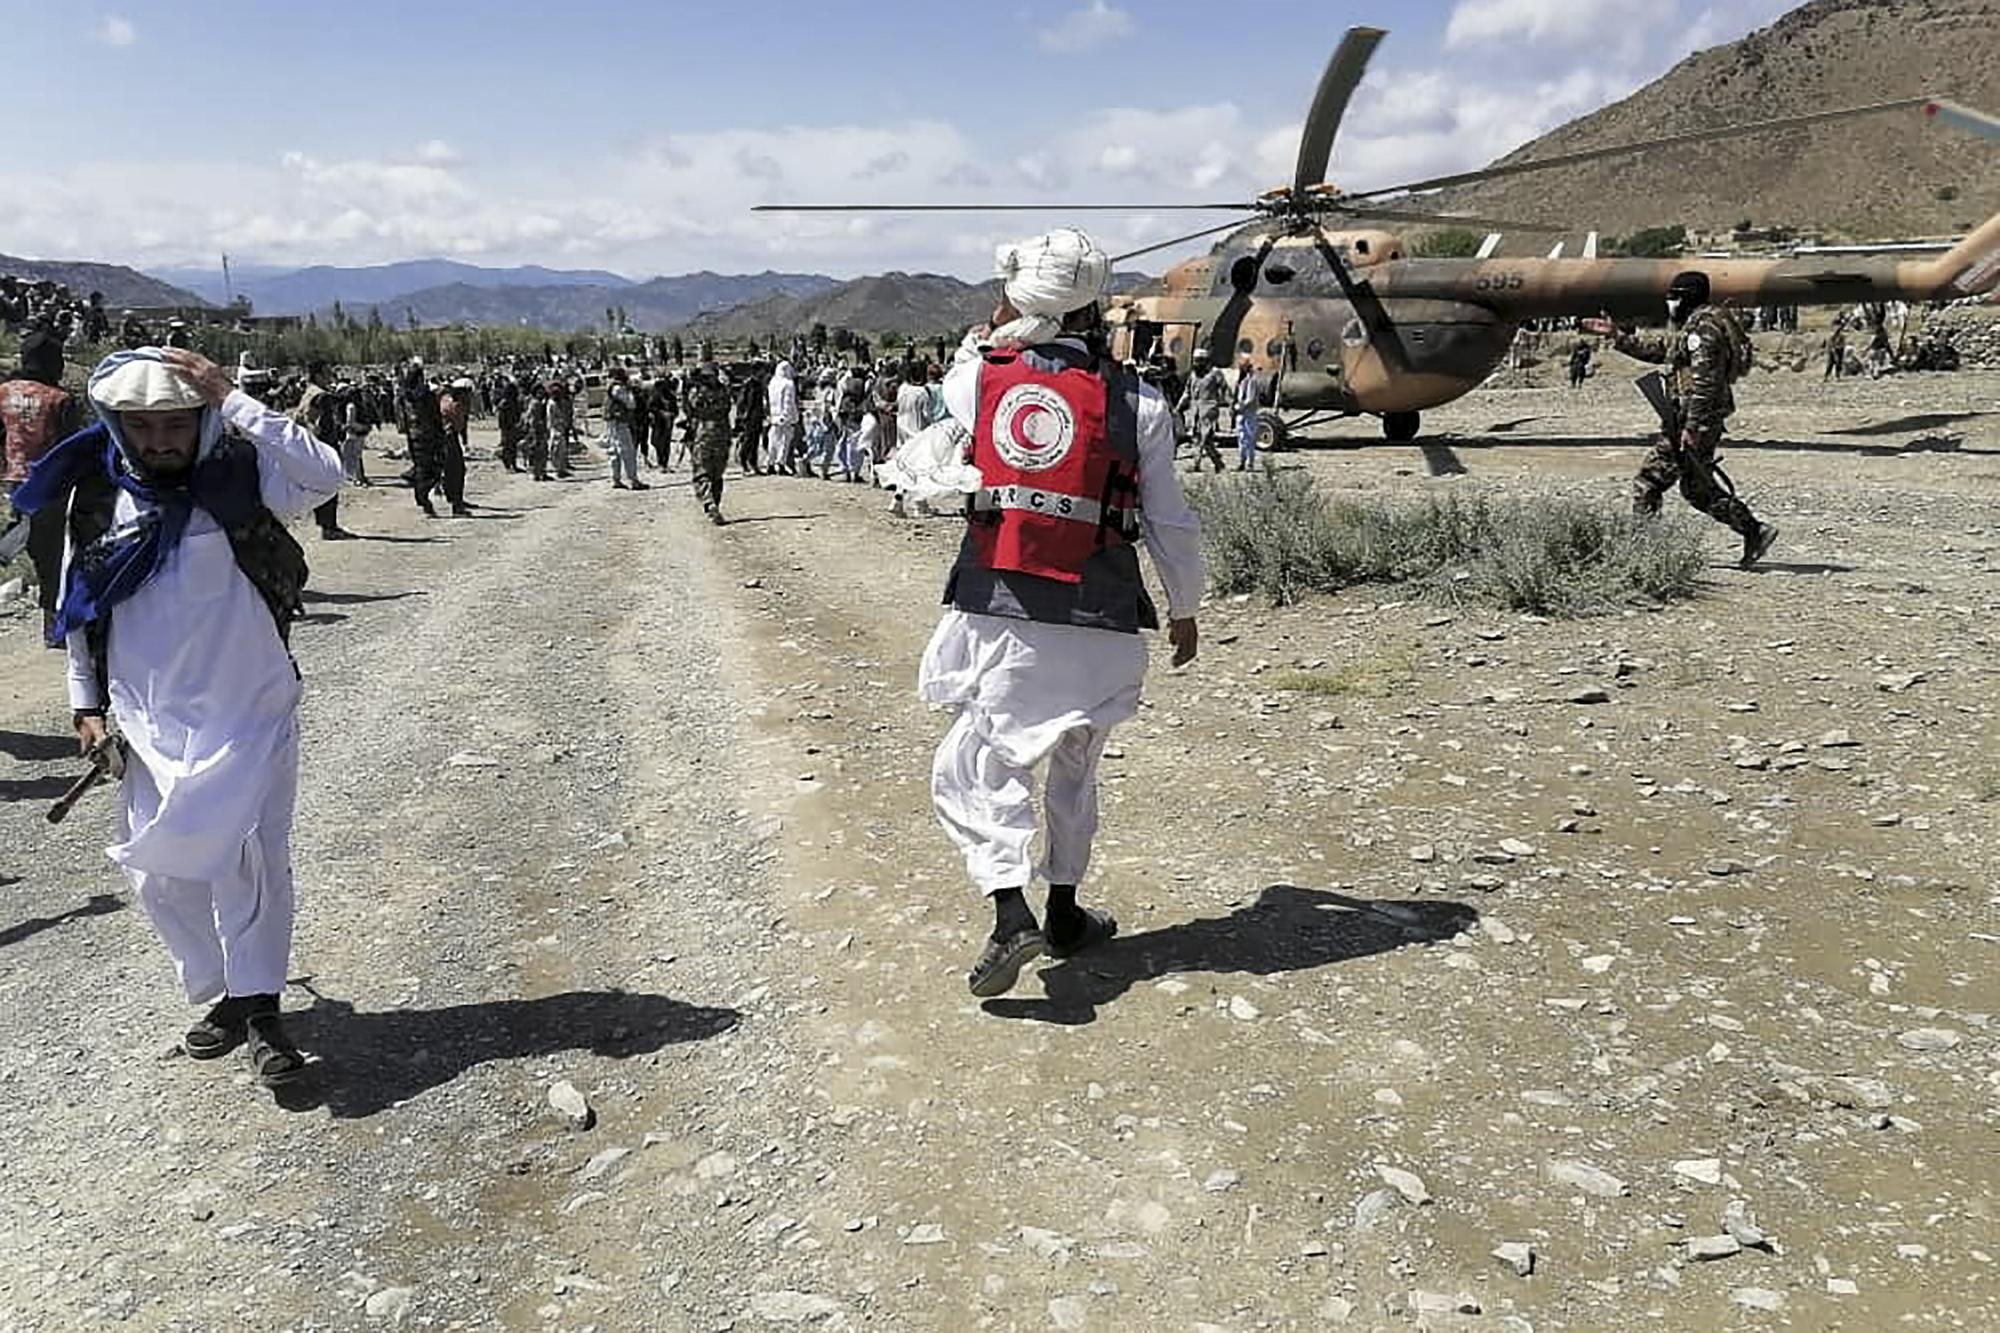 Des soldats et des membres du Croissant-Rouge afghan s'activent près d'un hélicoptère dans une zone touchée par le séisme dans le district de Giyan, dans la province de Paktika. [AFP - Bakhtar News Agency]